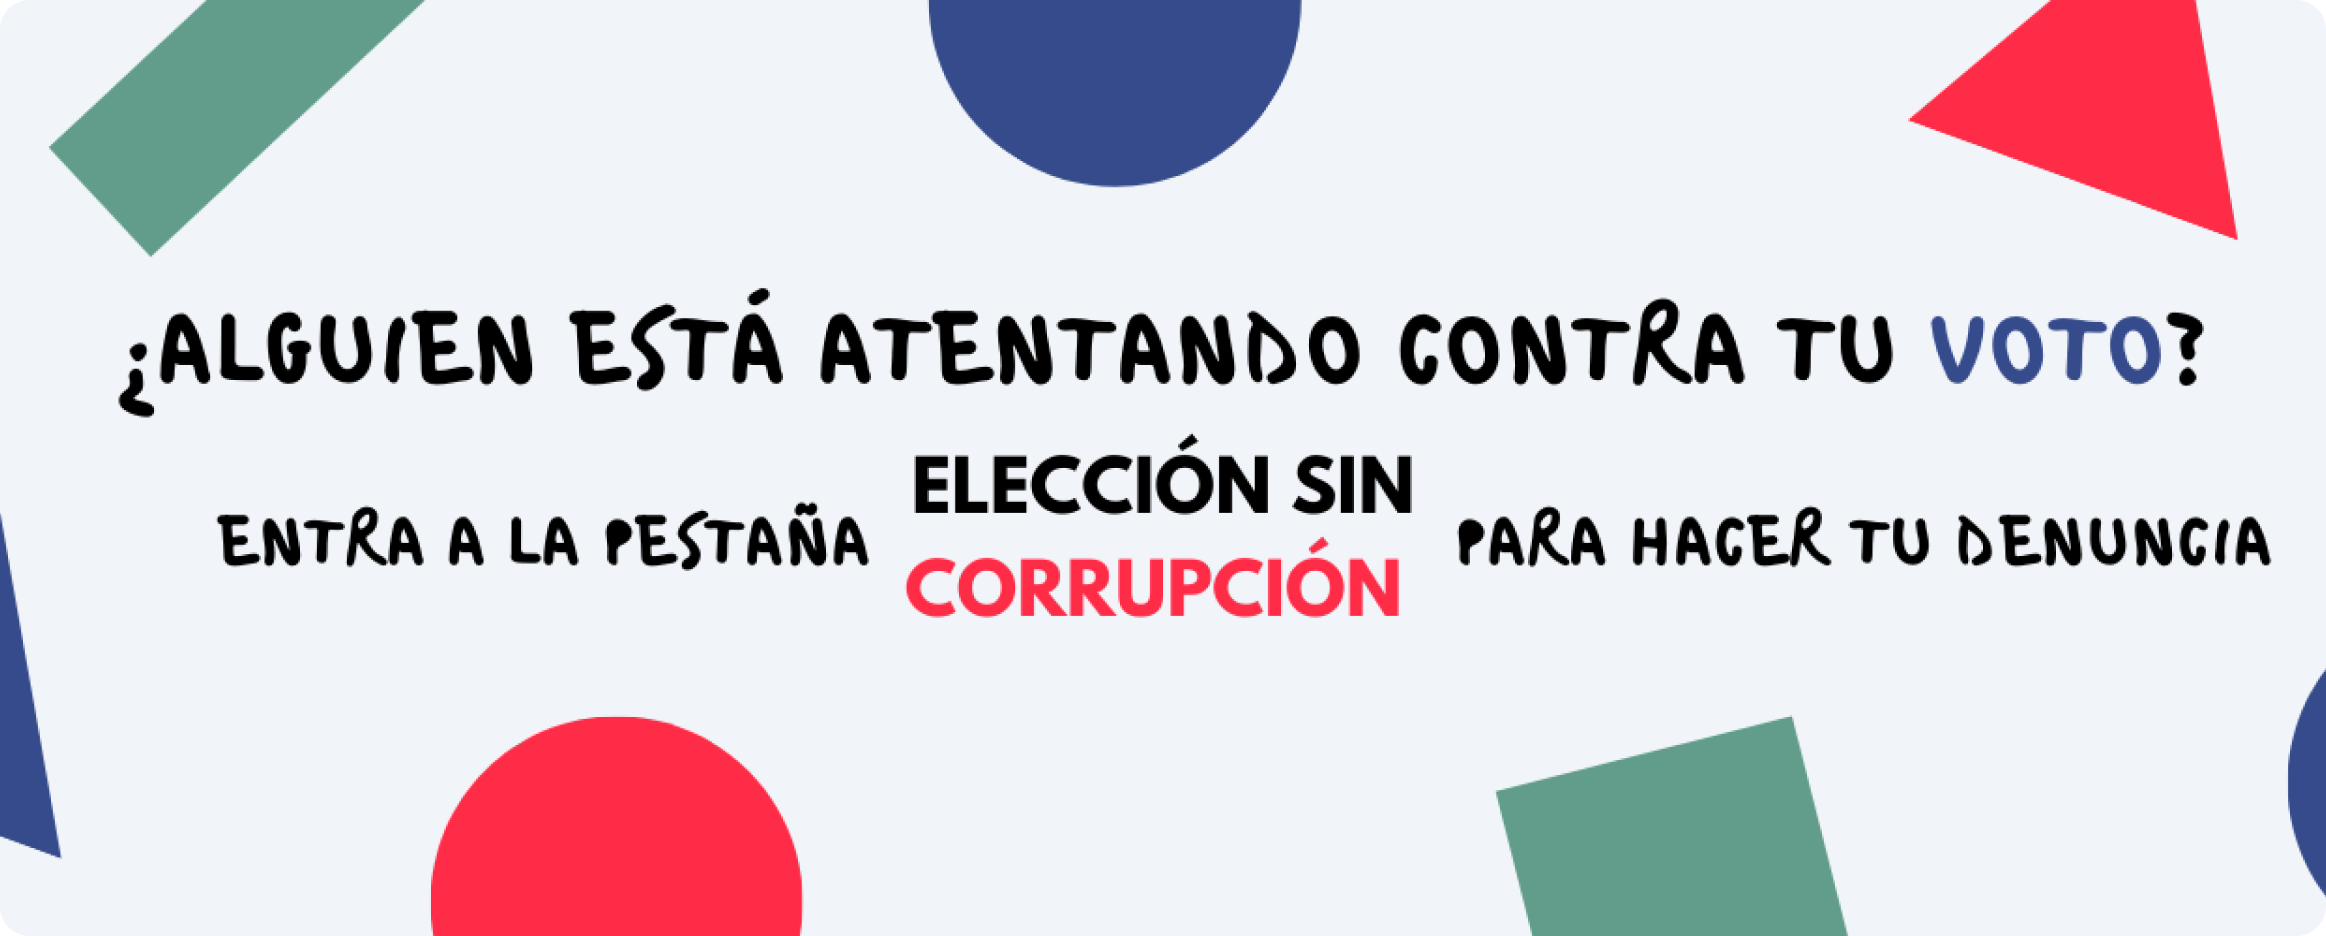  Elección sin corrupción